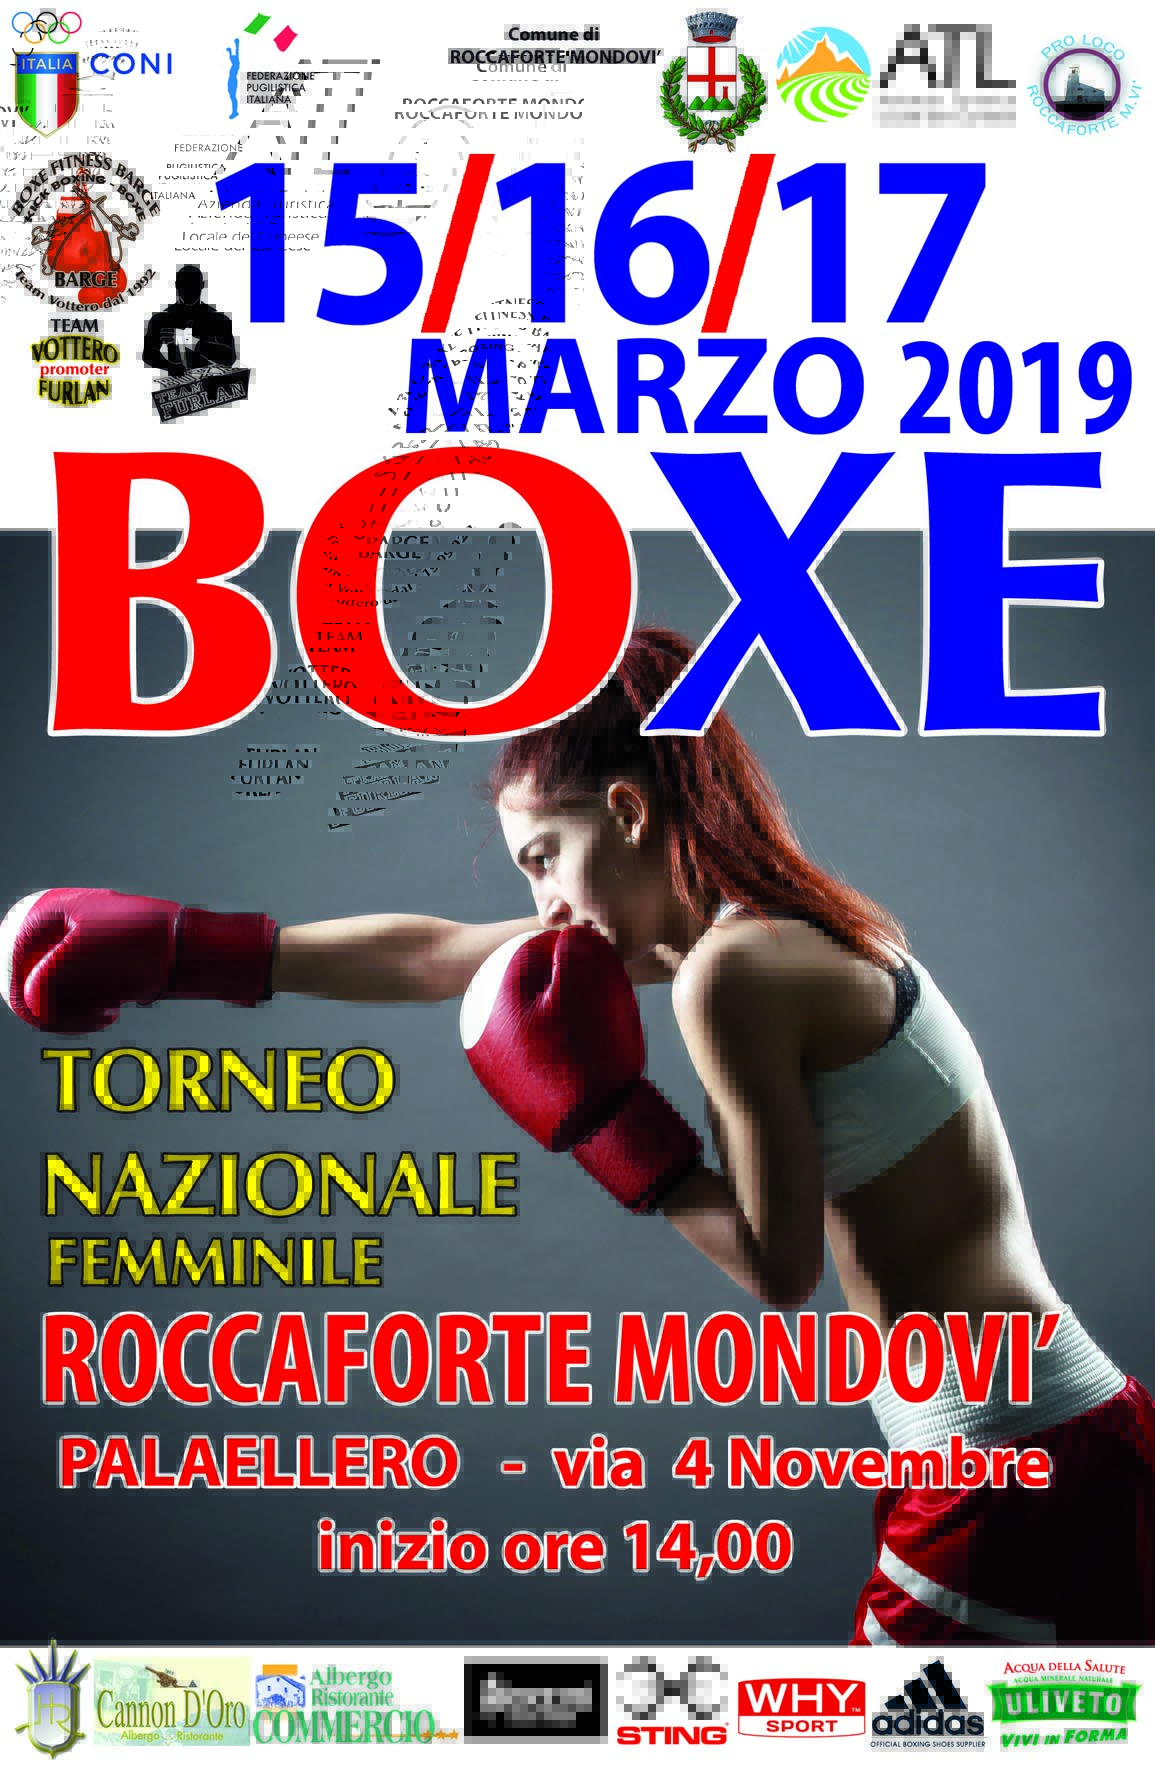 Torneo Naz. Femminile 2019 - Roccaforte Mondovì 15-17 Marzo: ELENCO PARTECIPANTI AGGIORNATO -  LIVESTREAMING & LIVESCORE